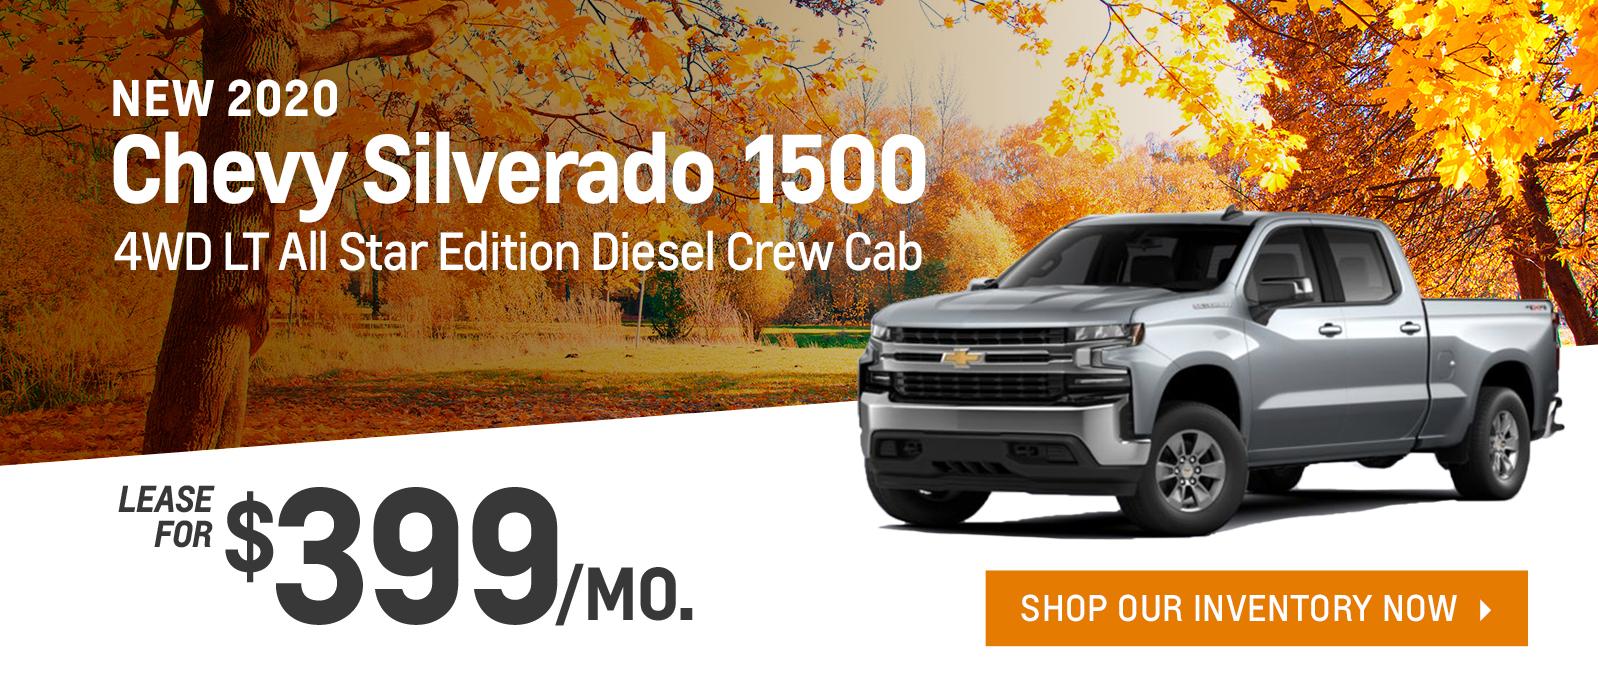 New 2020 Chevy Silverado 1500 4WD LT All Star Edition Diesel Crew Cab